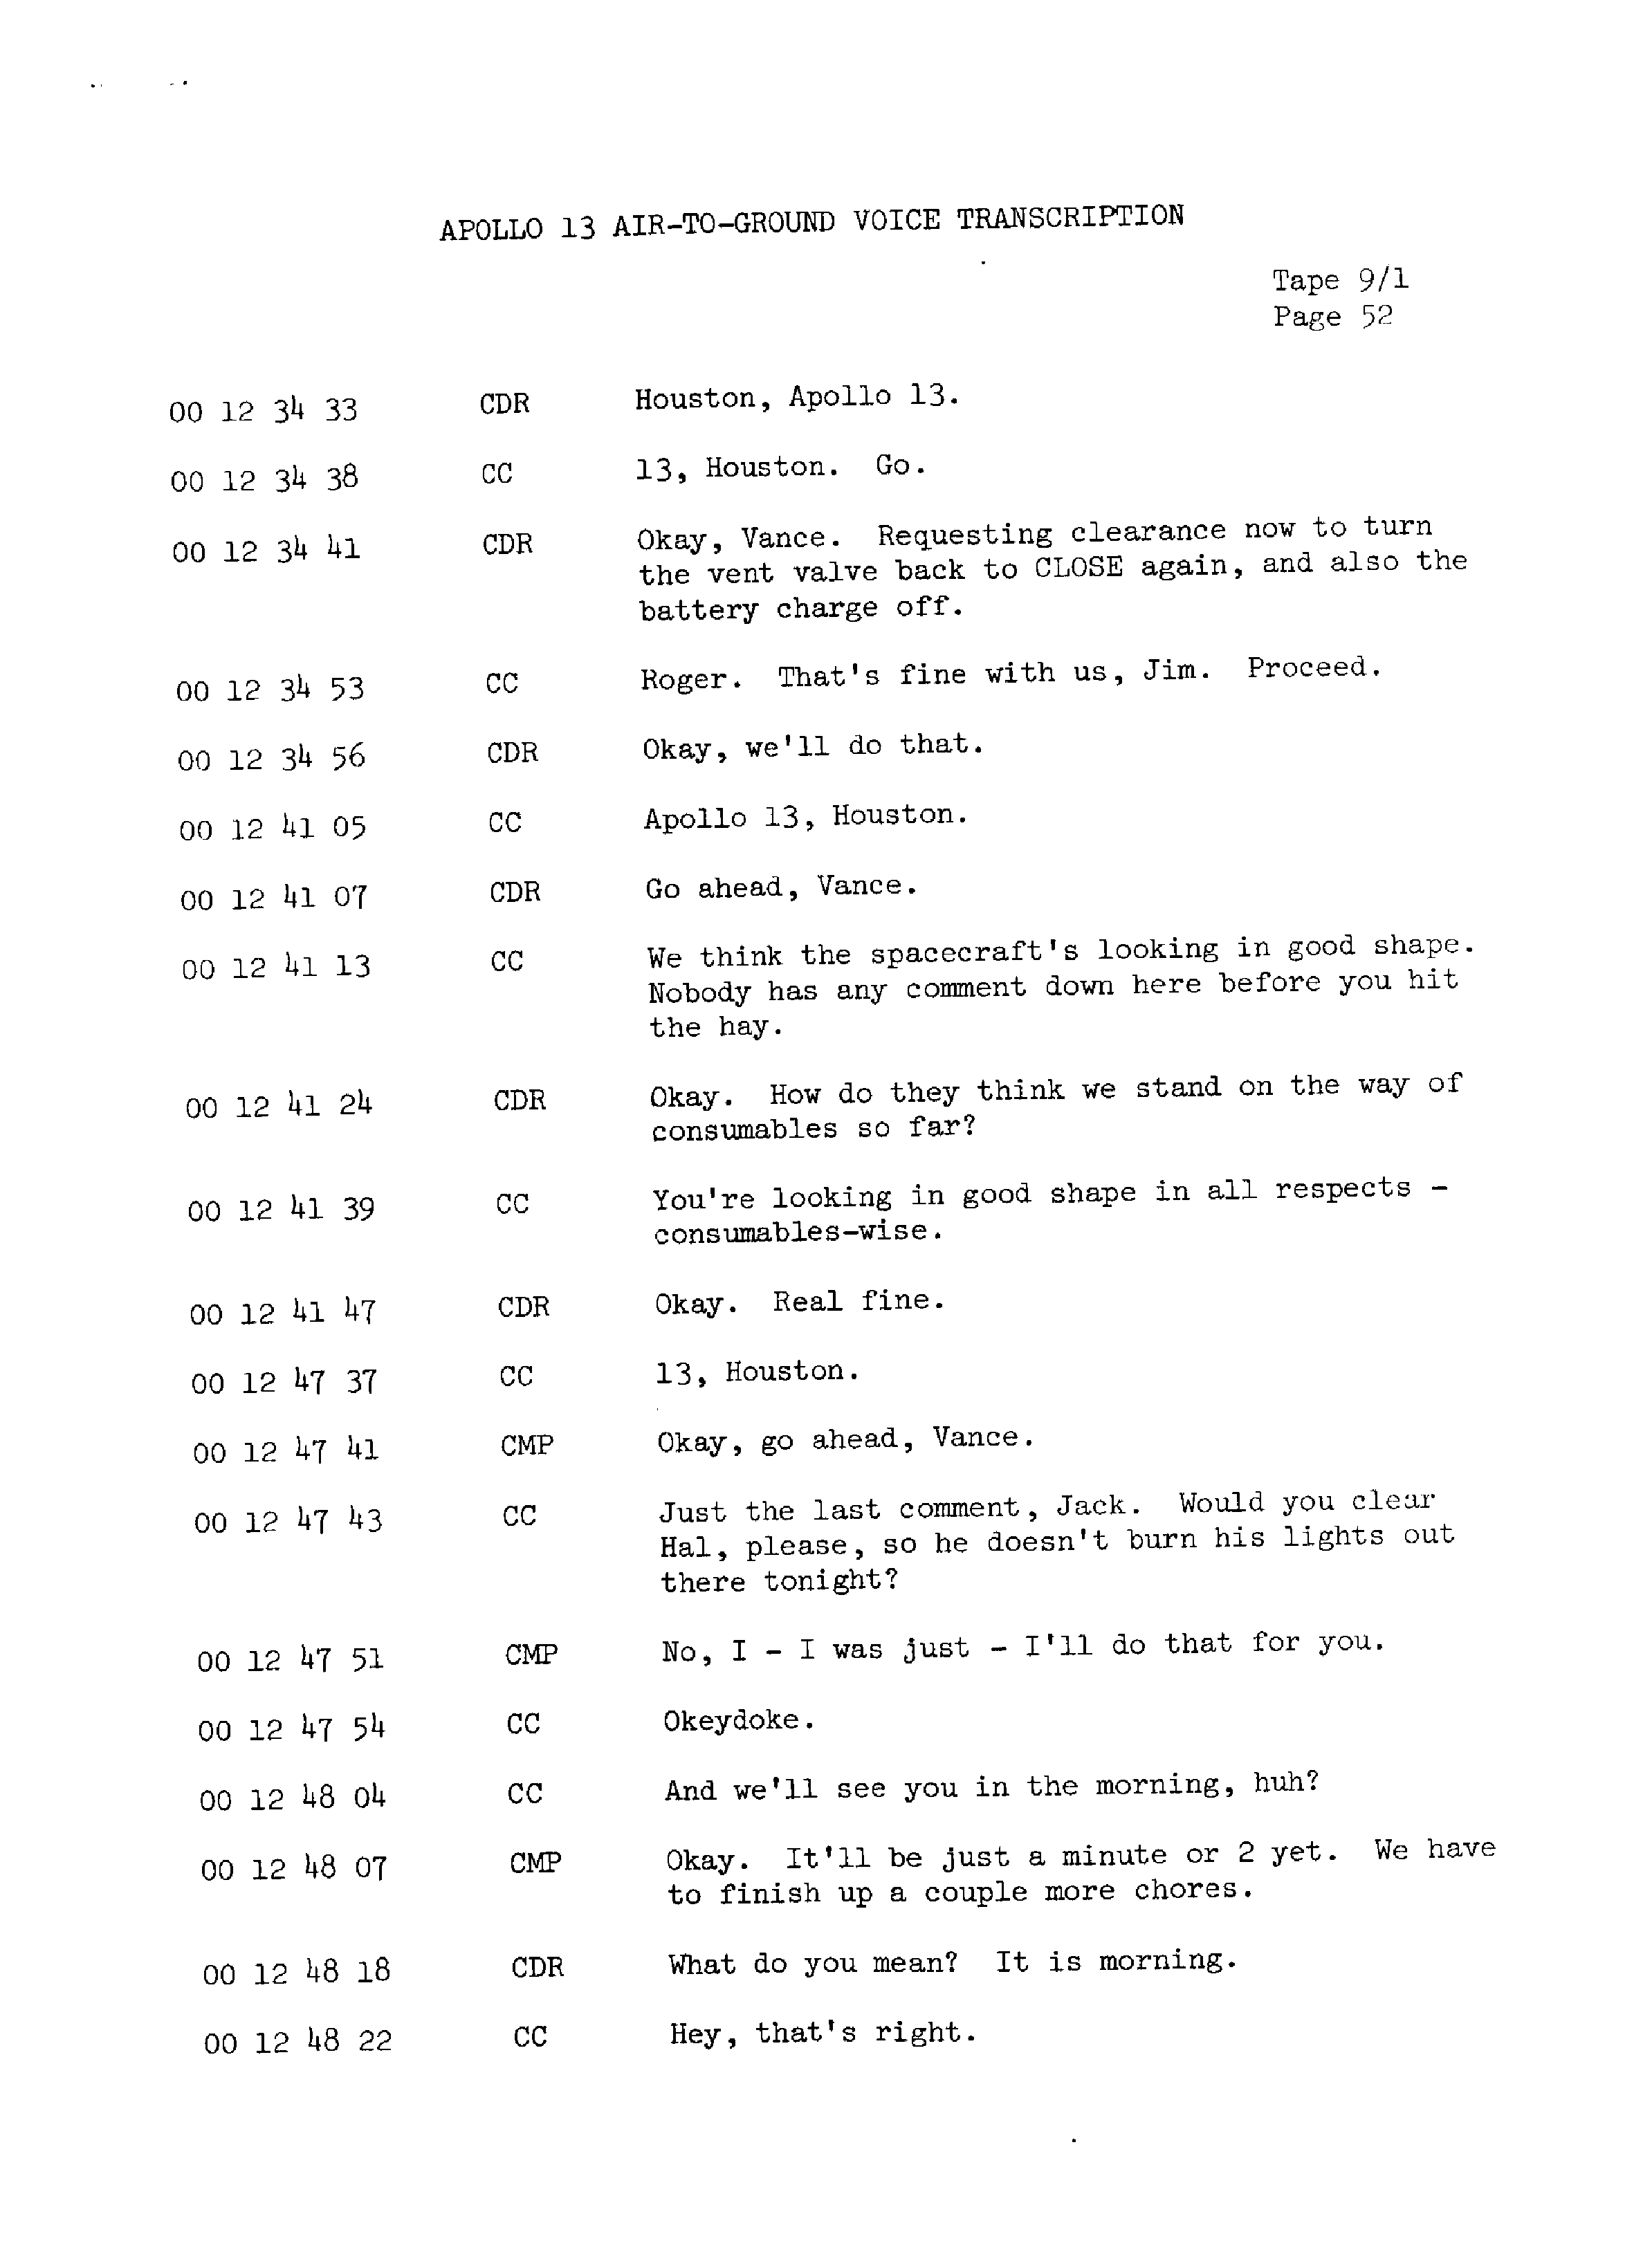 Page 59 of Apollo 13’s original transcript